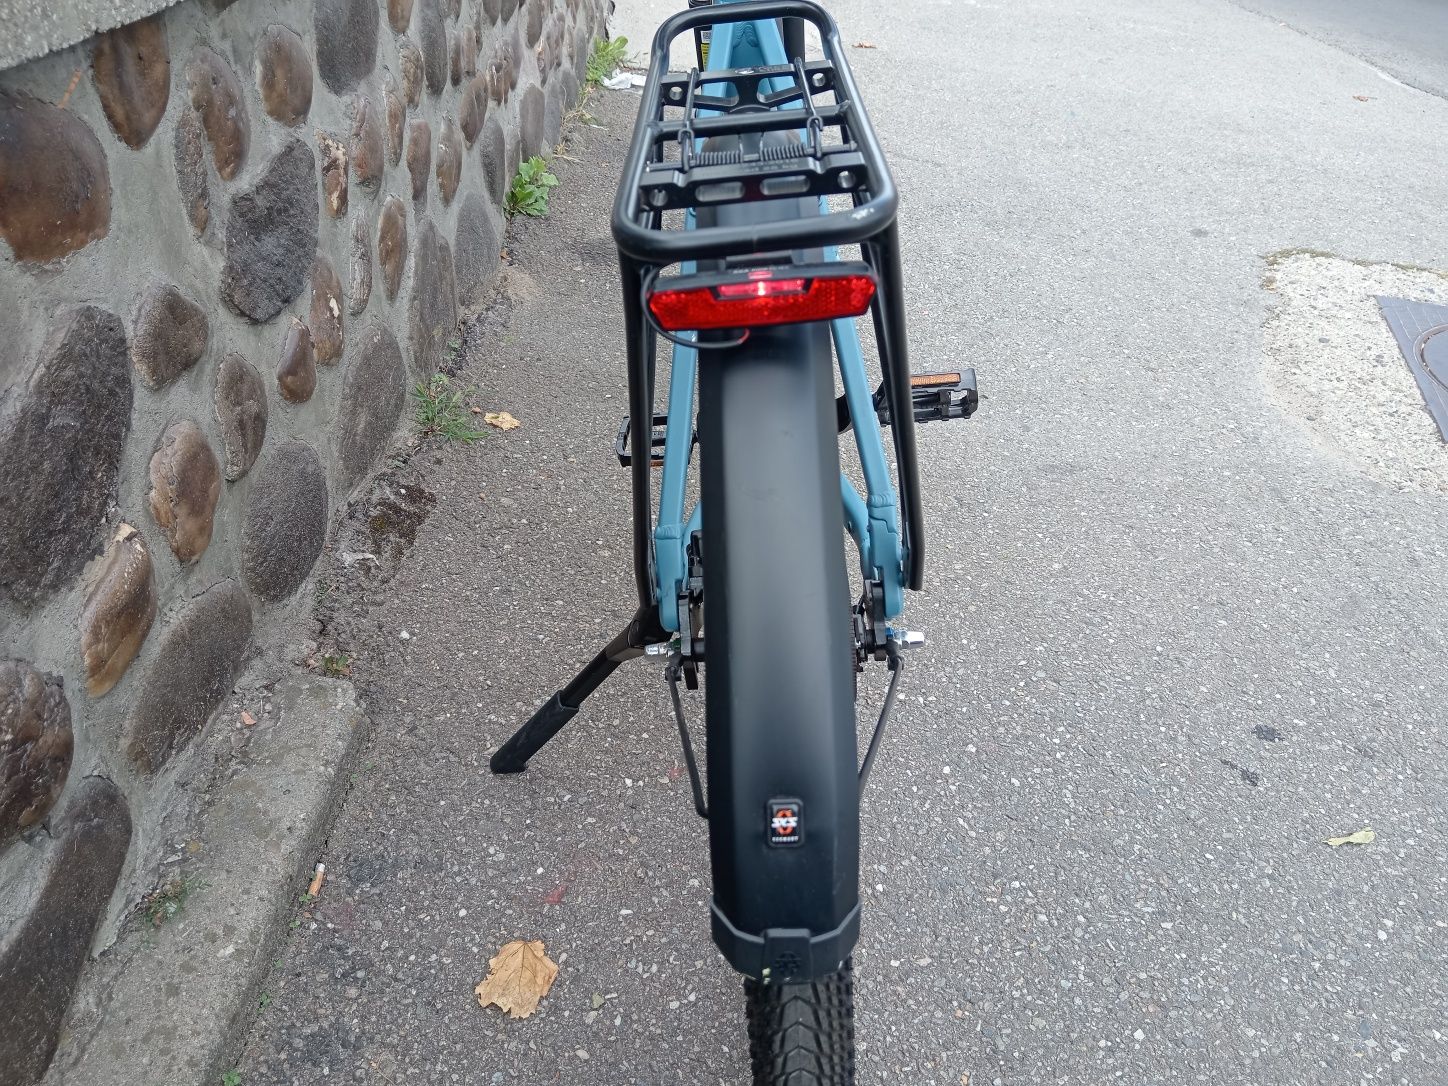 Bicicleta electrica winora sinus r8E, e bike bosch smart